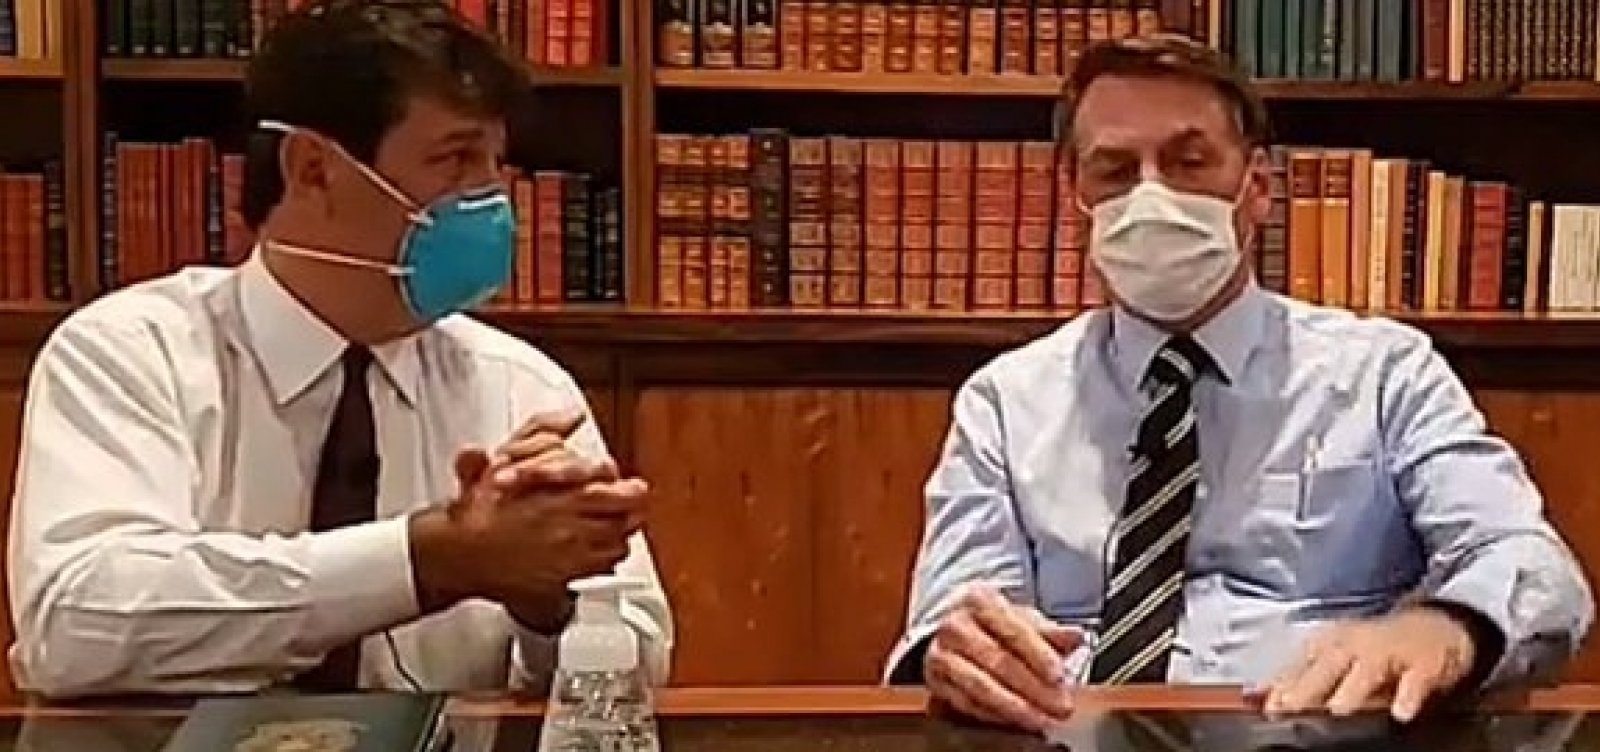 'Dramaticamente irônico': Cantanhede questiona Bolsonaro sobre coronavirus ser 'fantasia da mídia'